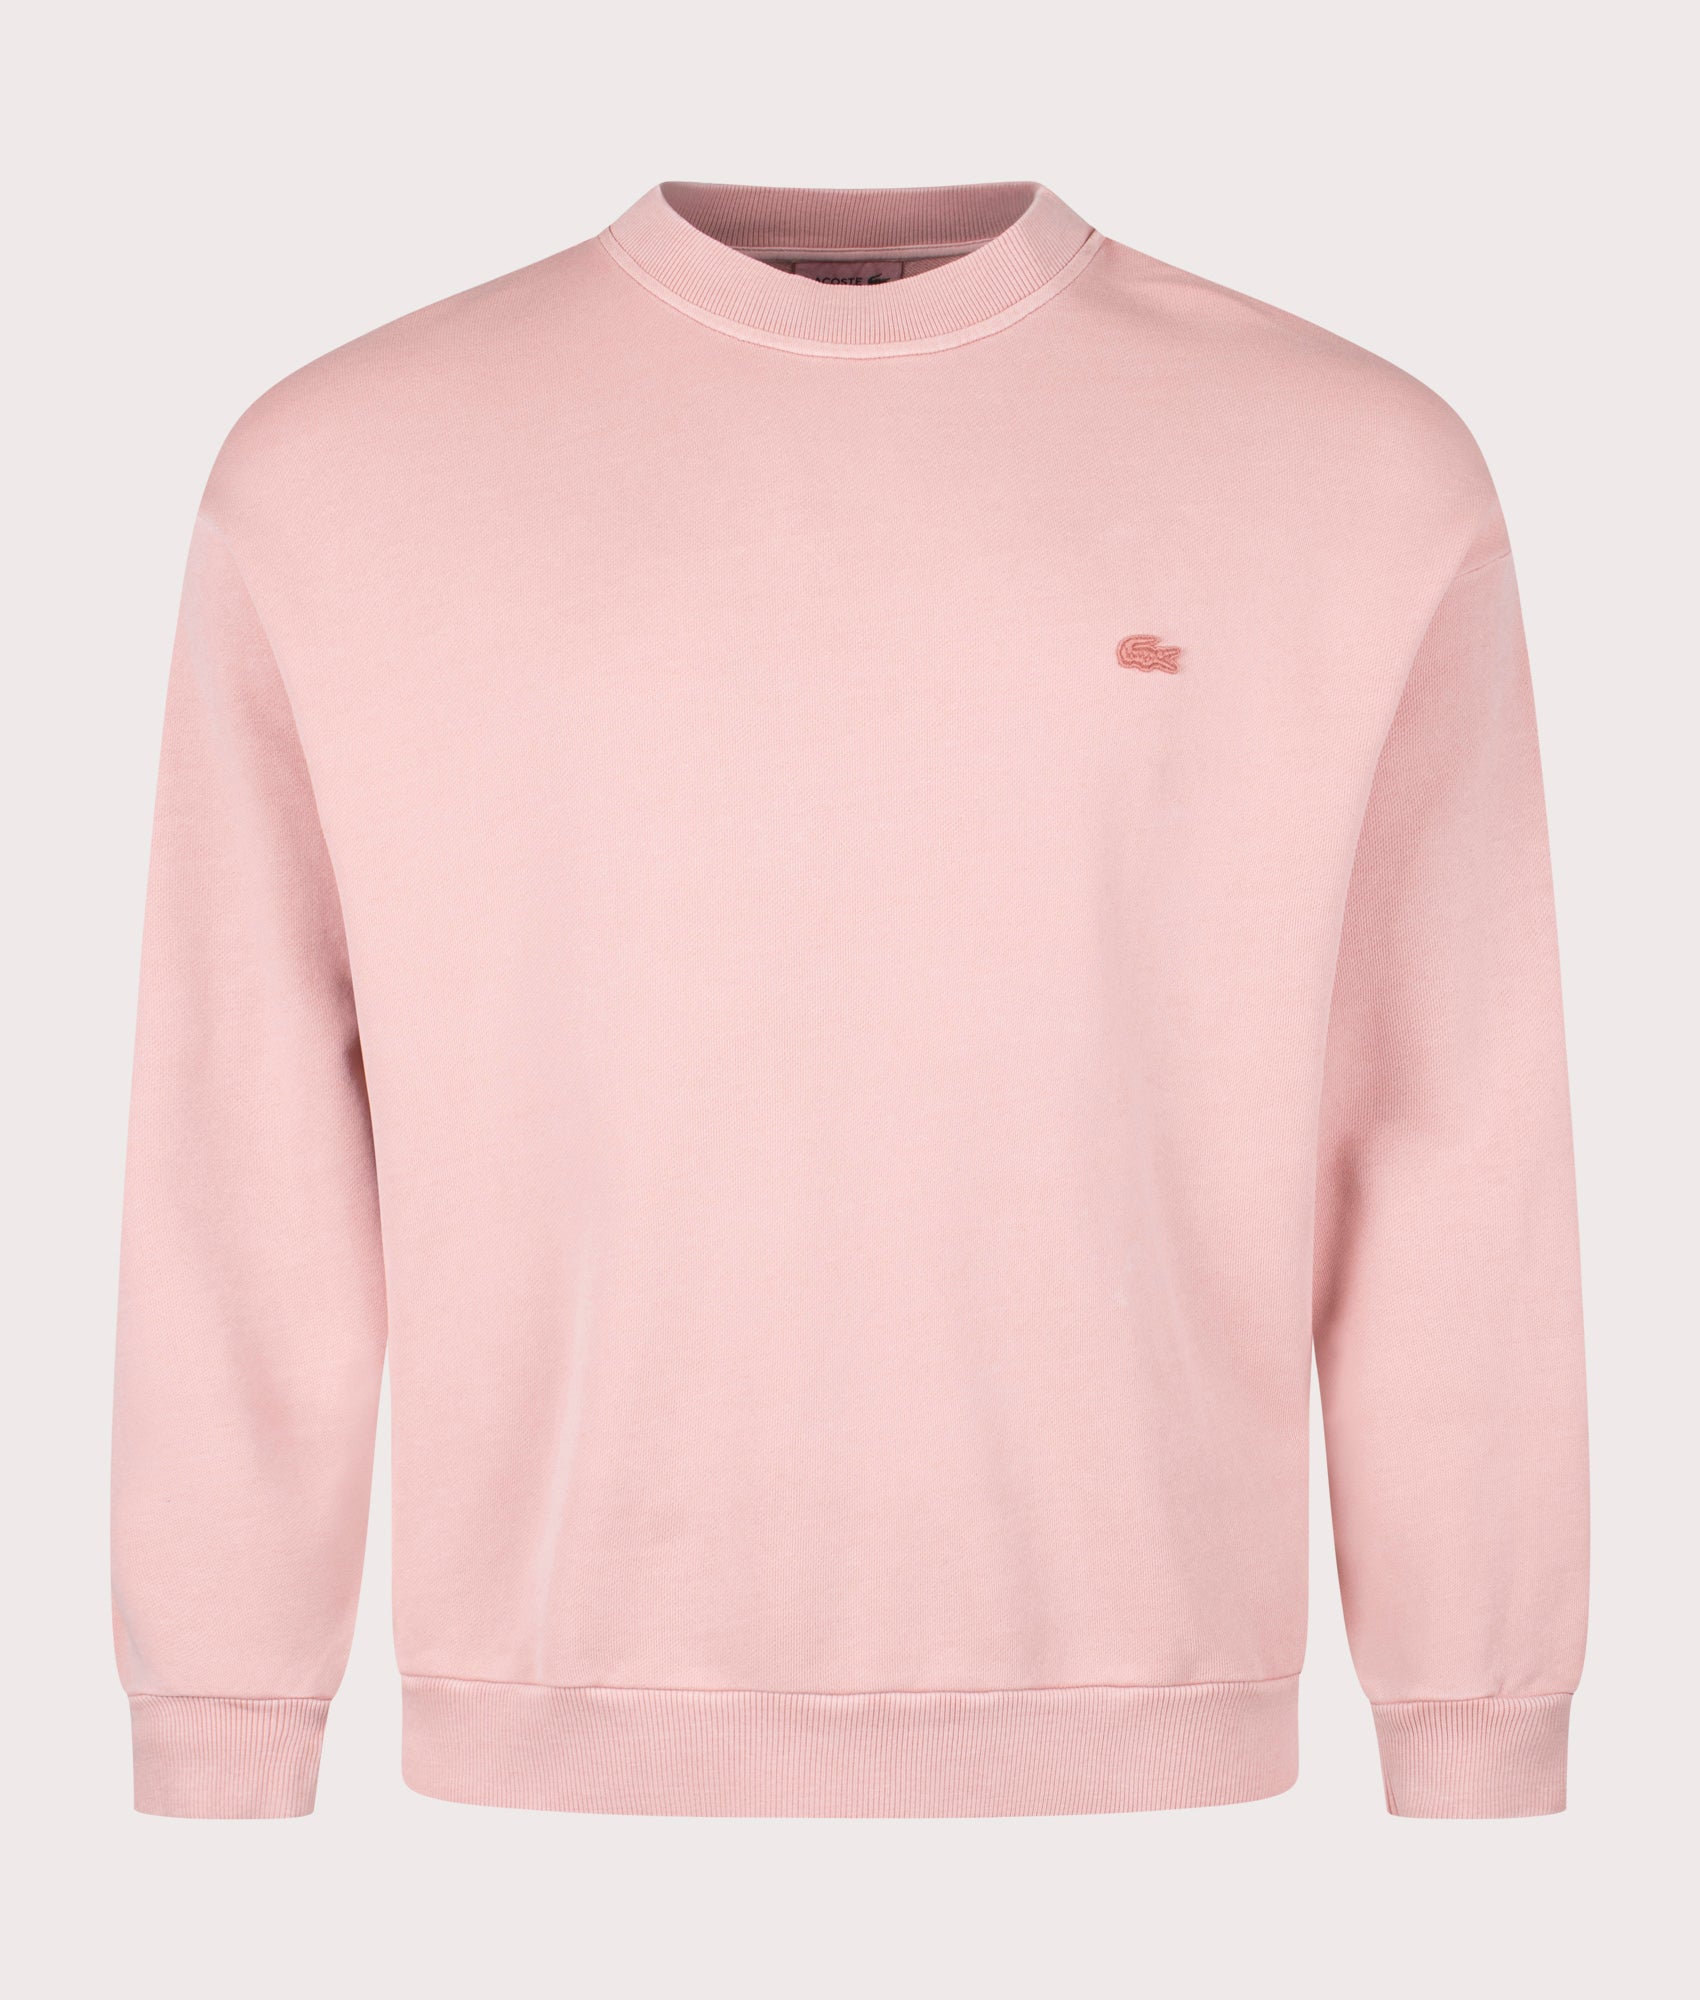 Lacoste Mens Logo Sweatshirt - Colour: K86 Eco Pink - Size: 5/L